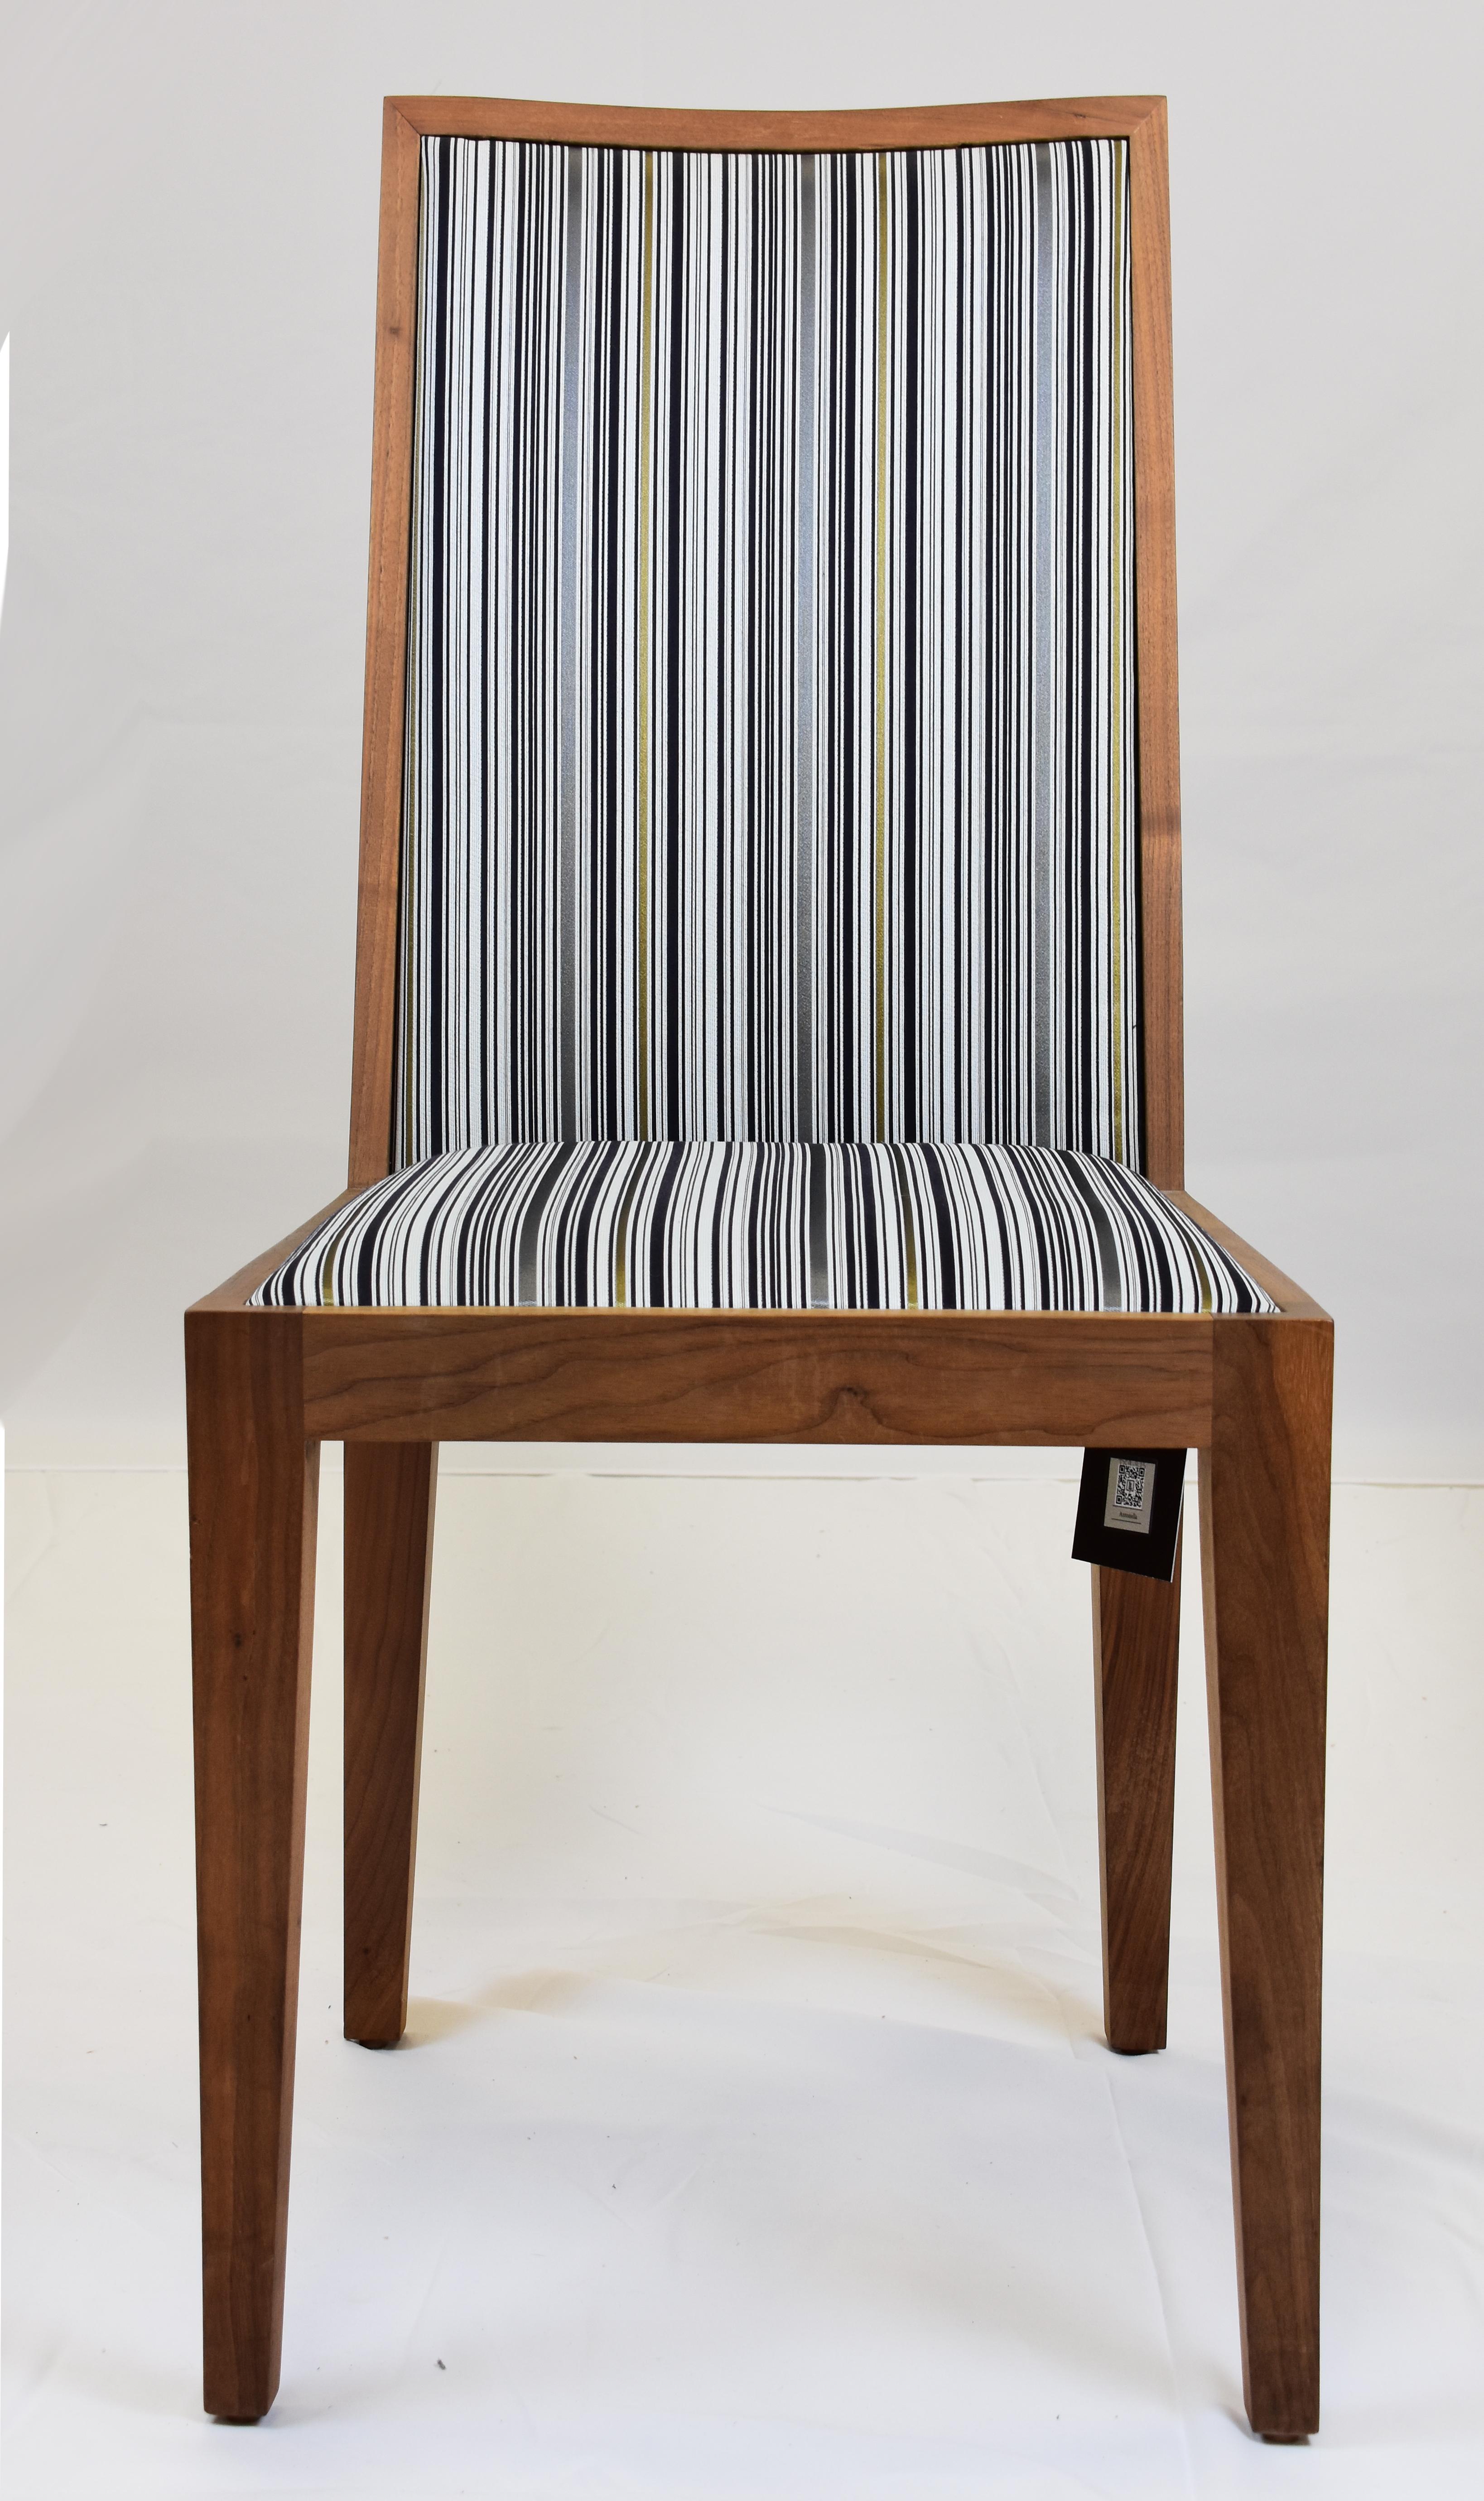 Le Jeune Upholstery Antonella Nussbaum Esszimmerstuhl Showroom Modell

Zum Verkauf angeboten wird ein armloser Esszimmerstuhl von Le Jeune Upholstery mit grau und blau gestreiften Polstermischungen. Der Stuhl kann kleine Flecken auf dem Holz haben,